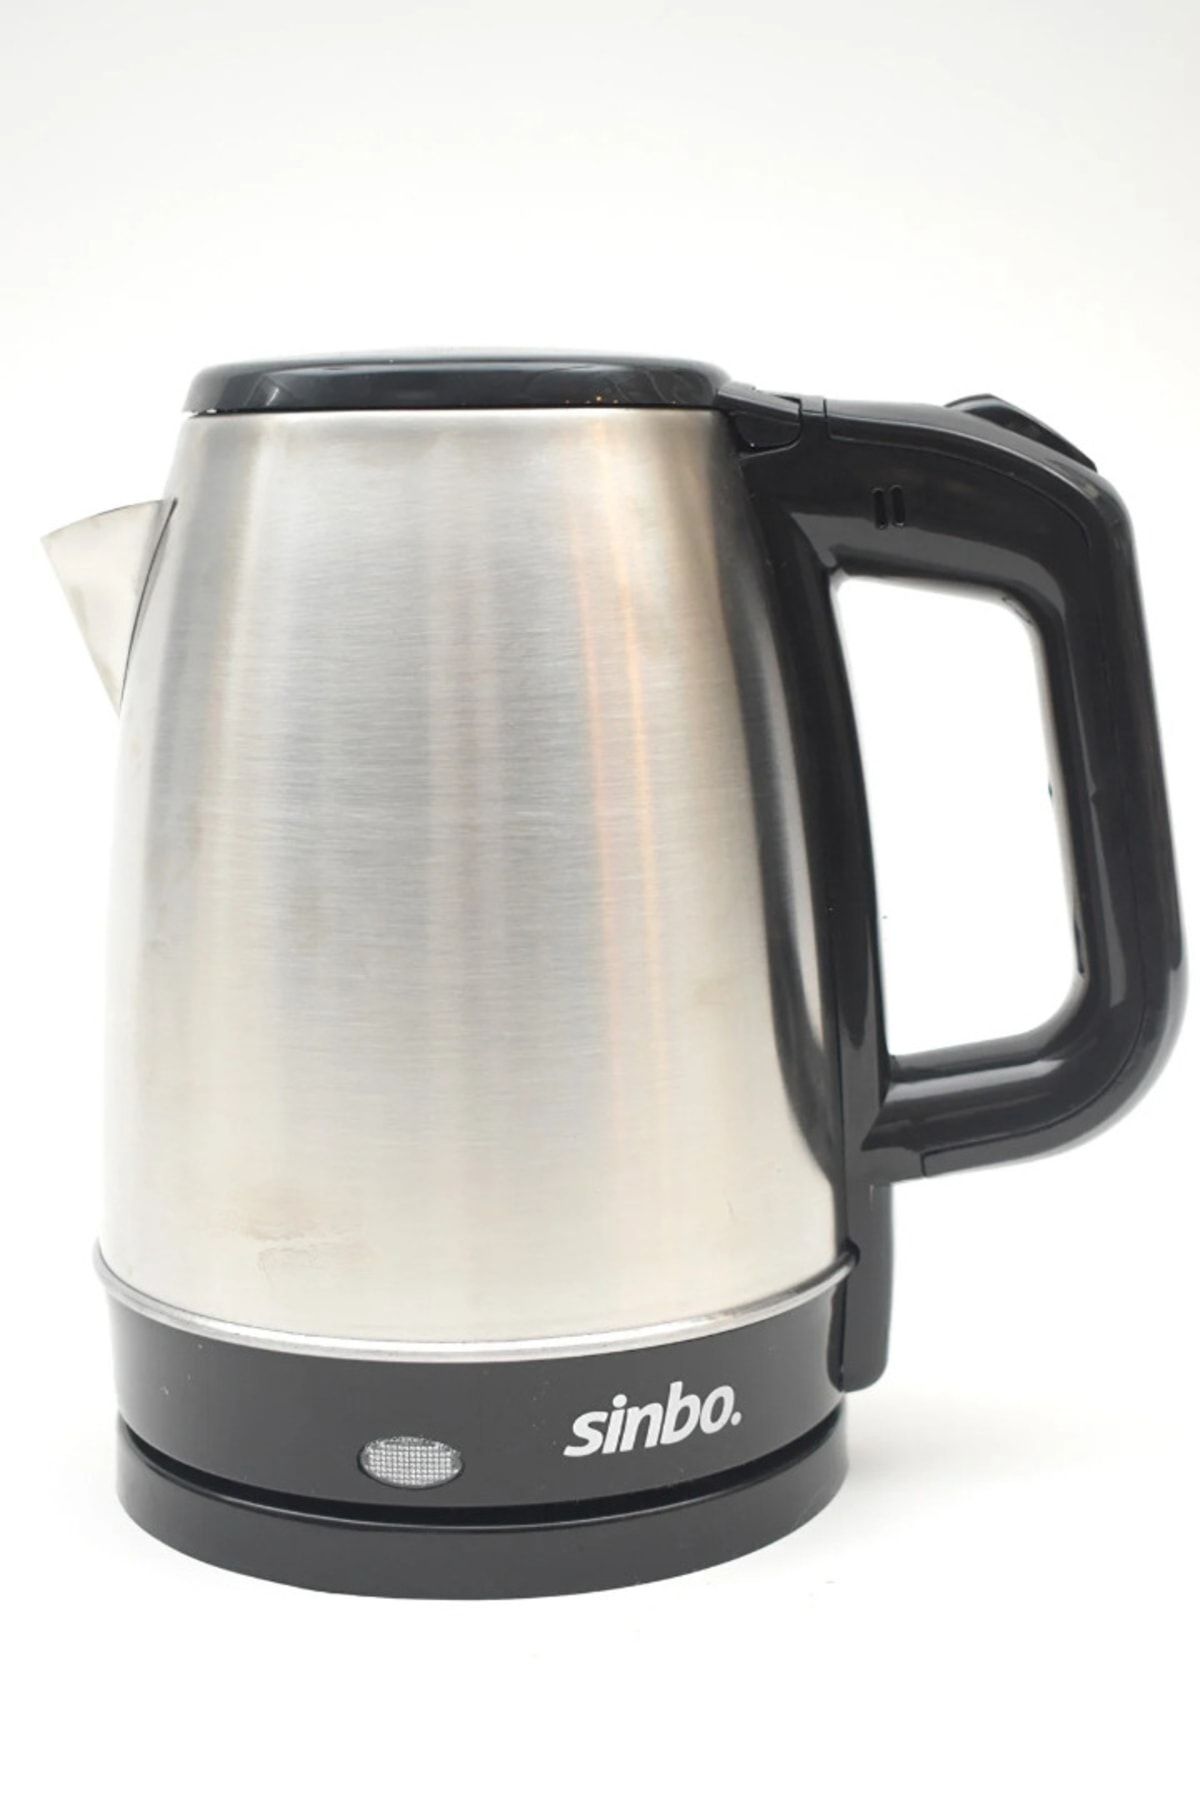 Sinbo Sk-8015 Kablosuz Su Isıtıcı